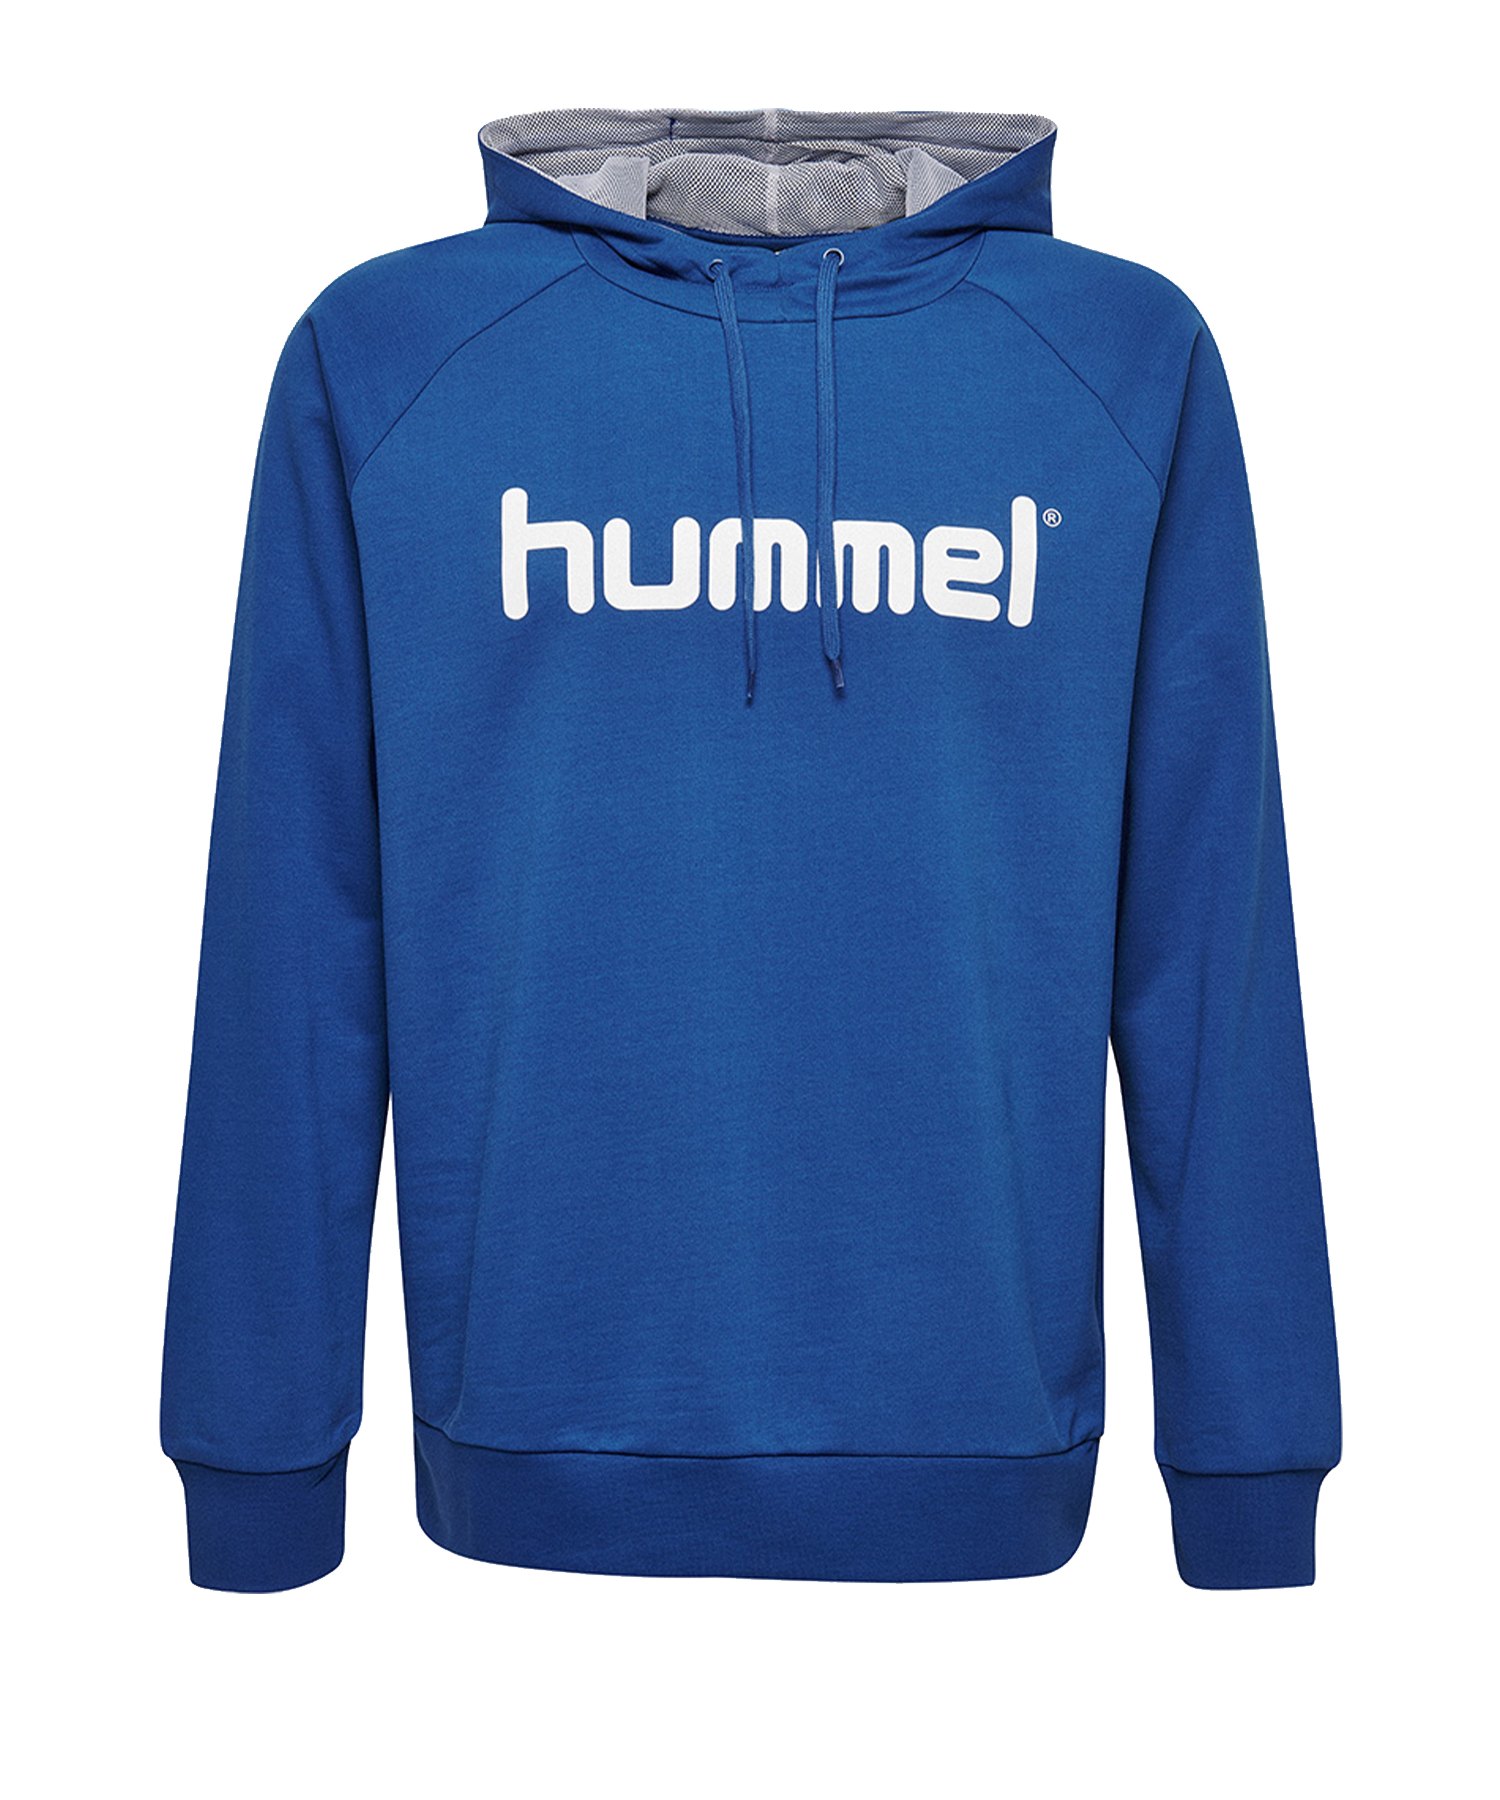 Hummel Cotton Logo Hoody Blau F7045 - Blau